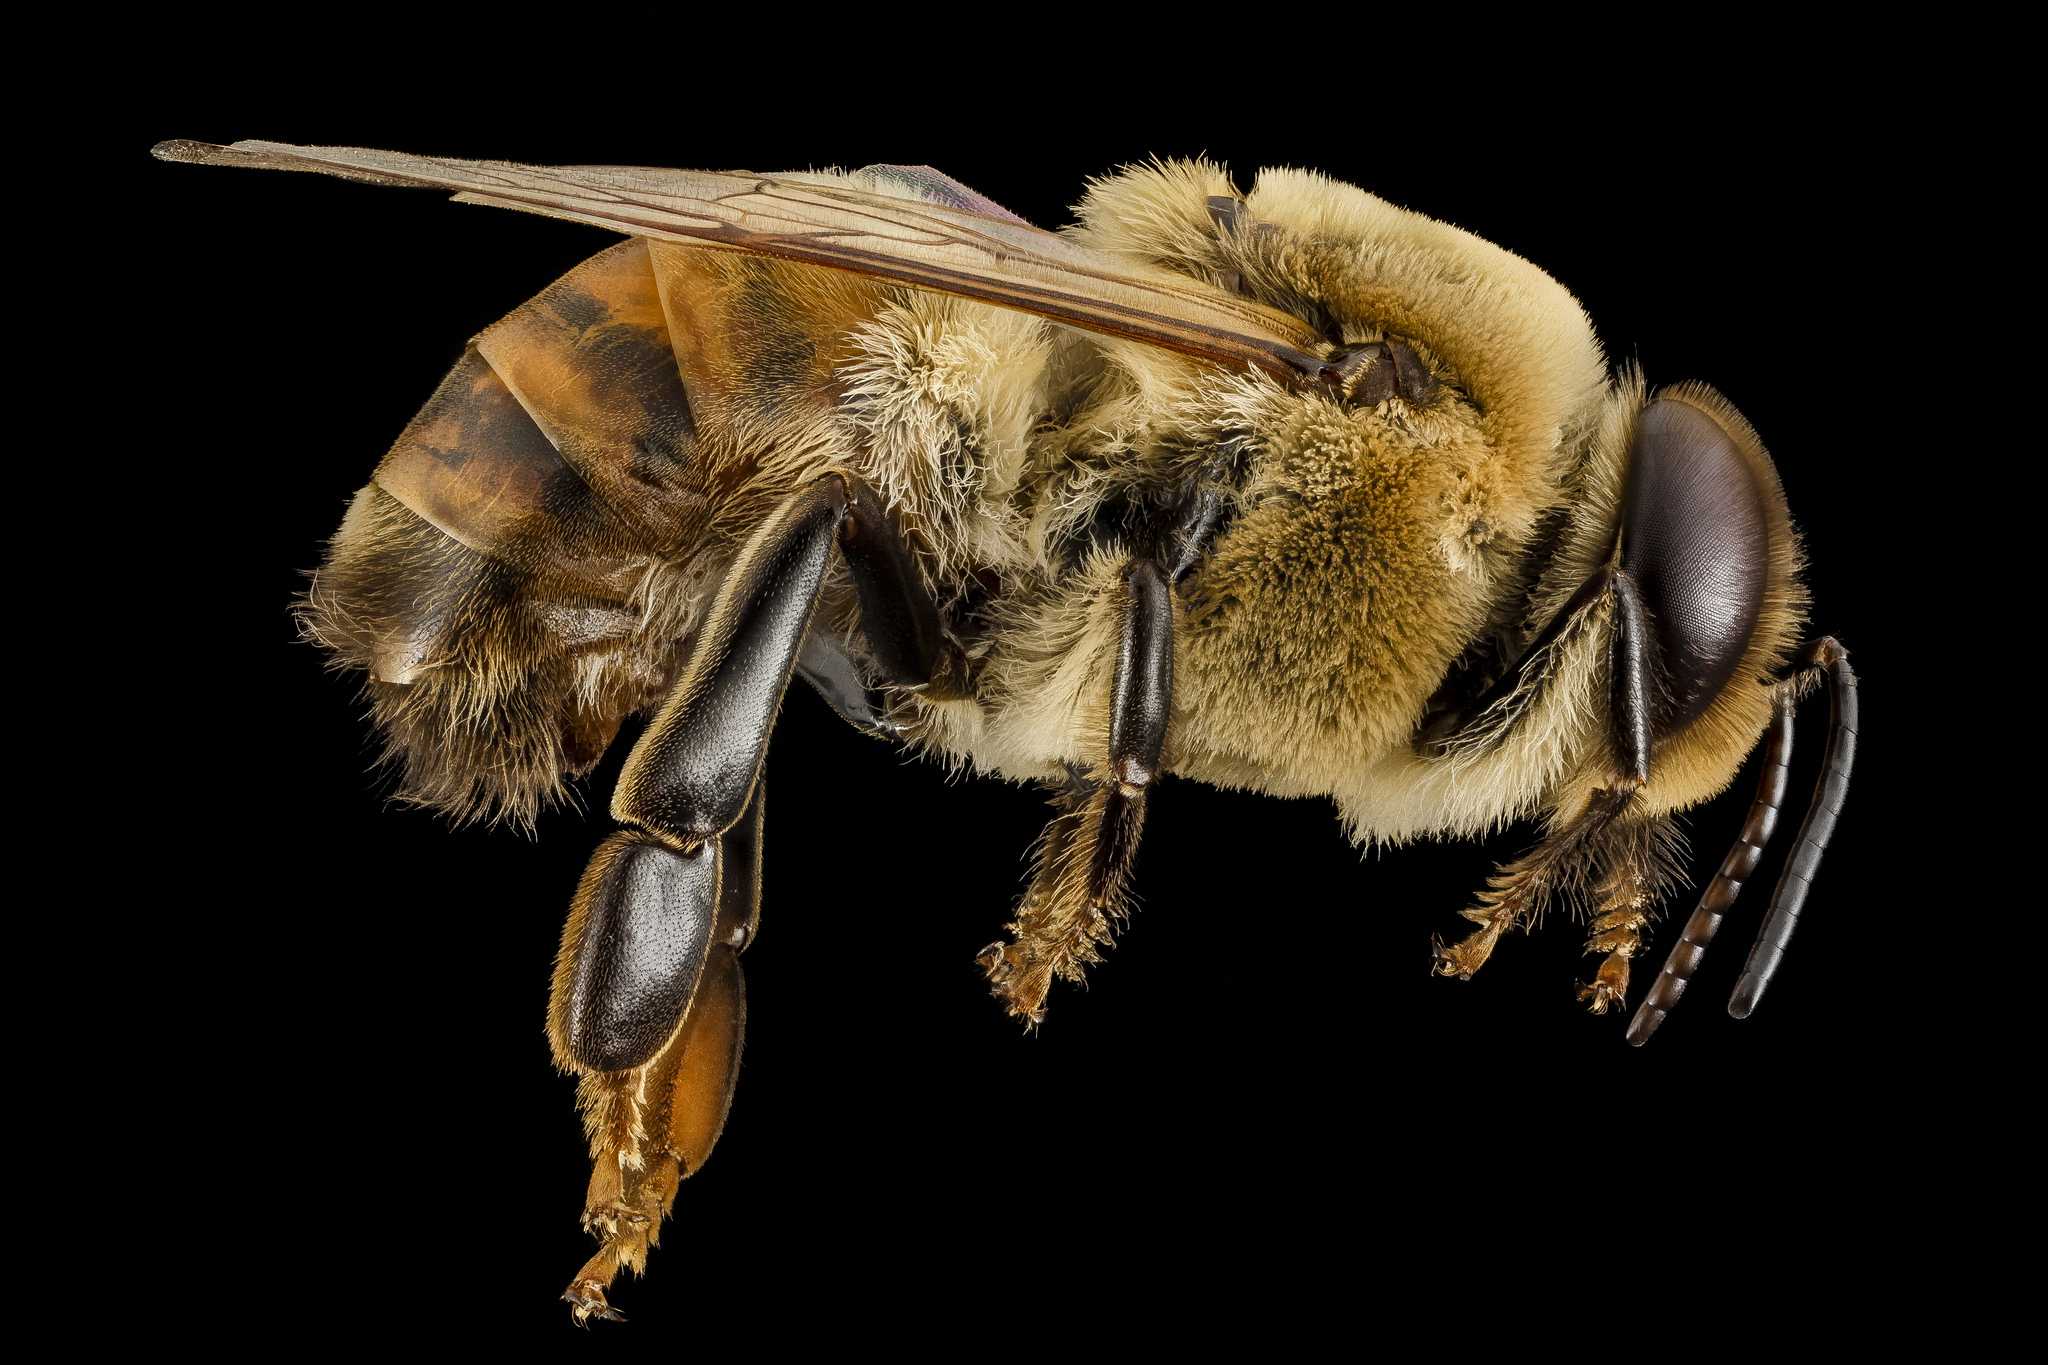 Кто такие пчелы трутни? их функции в семье